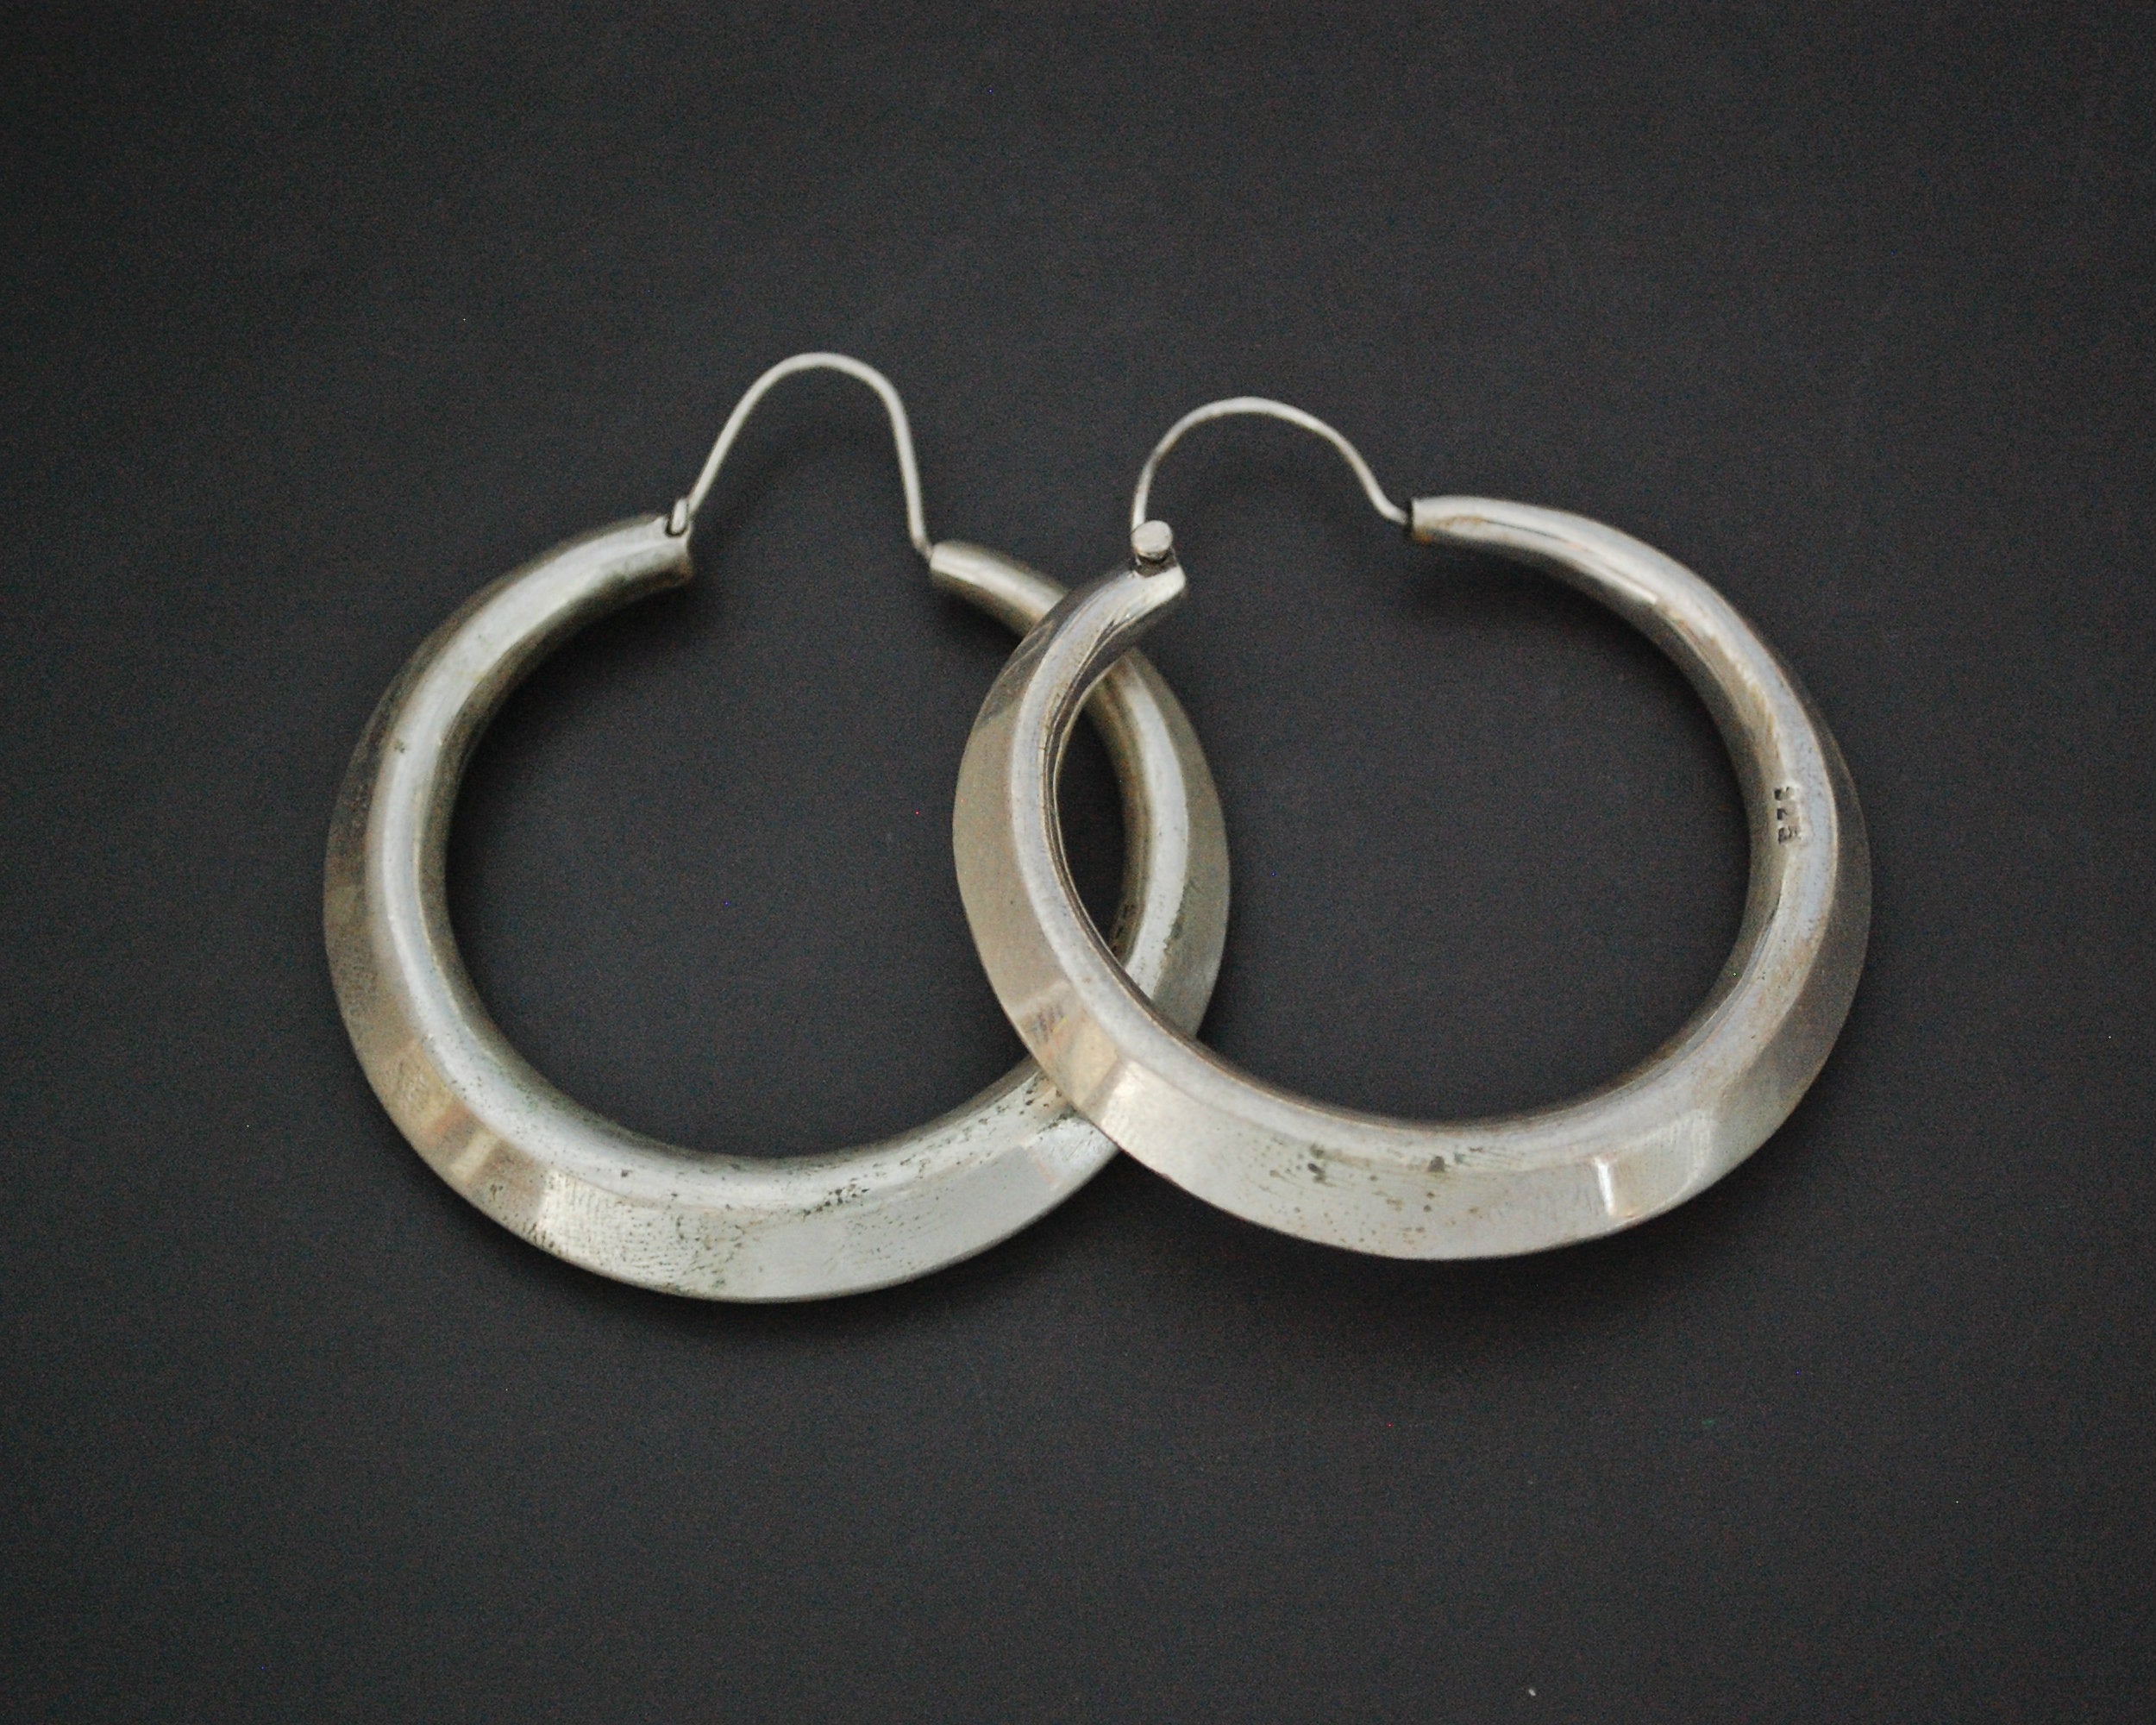 Huge Sterling Silver Hoop Earrings - XLARGE